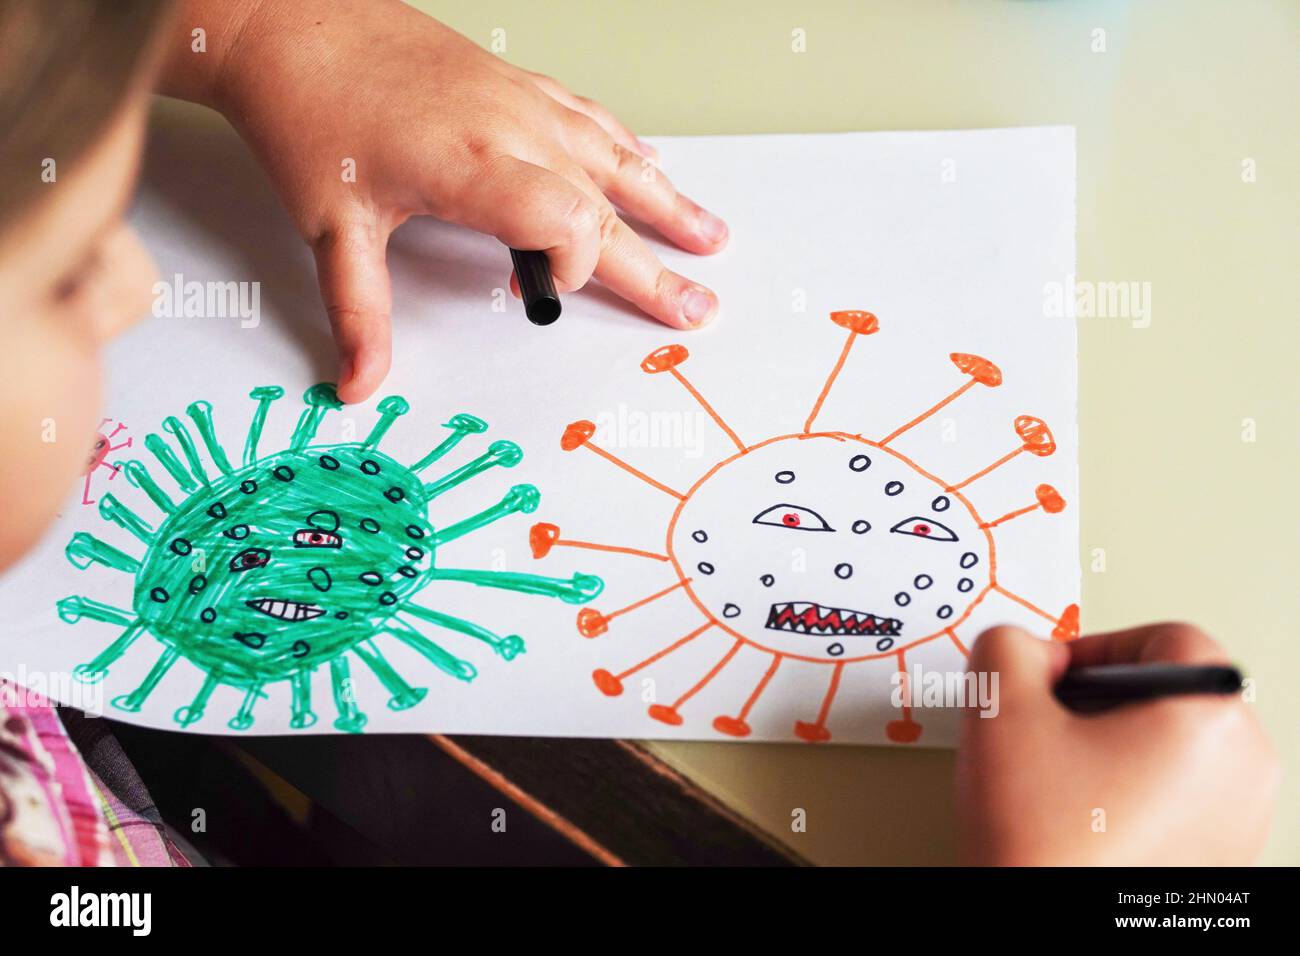 Nettes kleines Mädchen hält ihre Zeichnung Molekül Corona Virus Omicron von Filzspitzen Stifte. World Health Coronavirus-Ausbruch Infektionskrankheit und globale dea Stockfoto